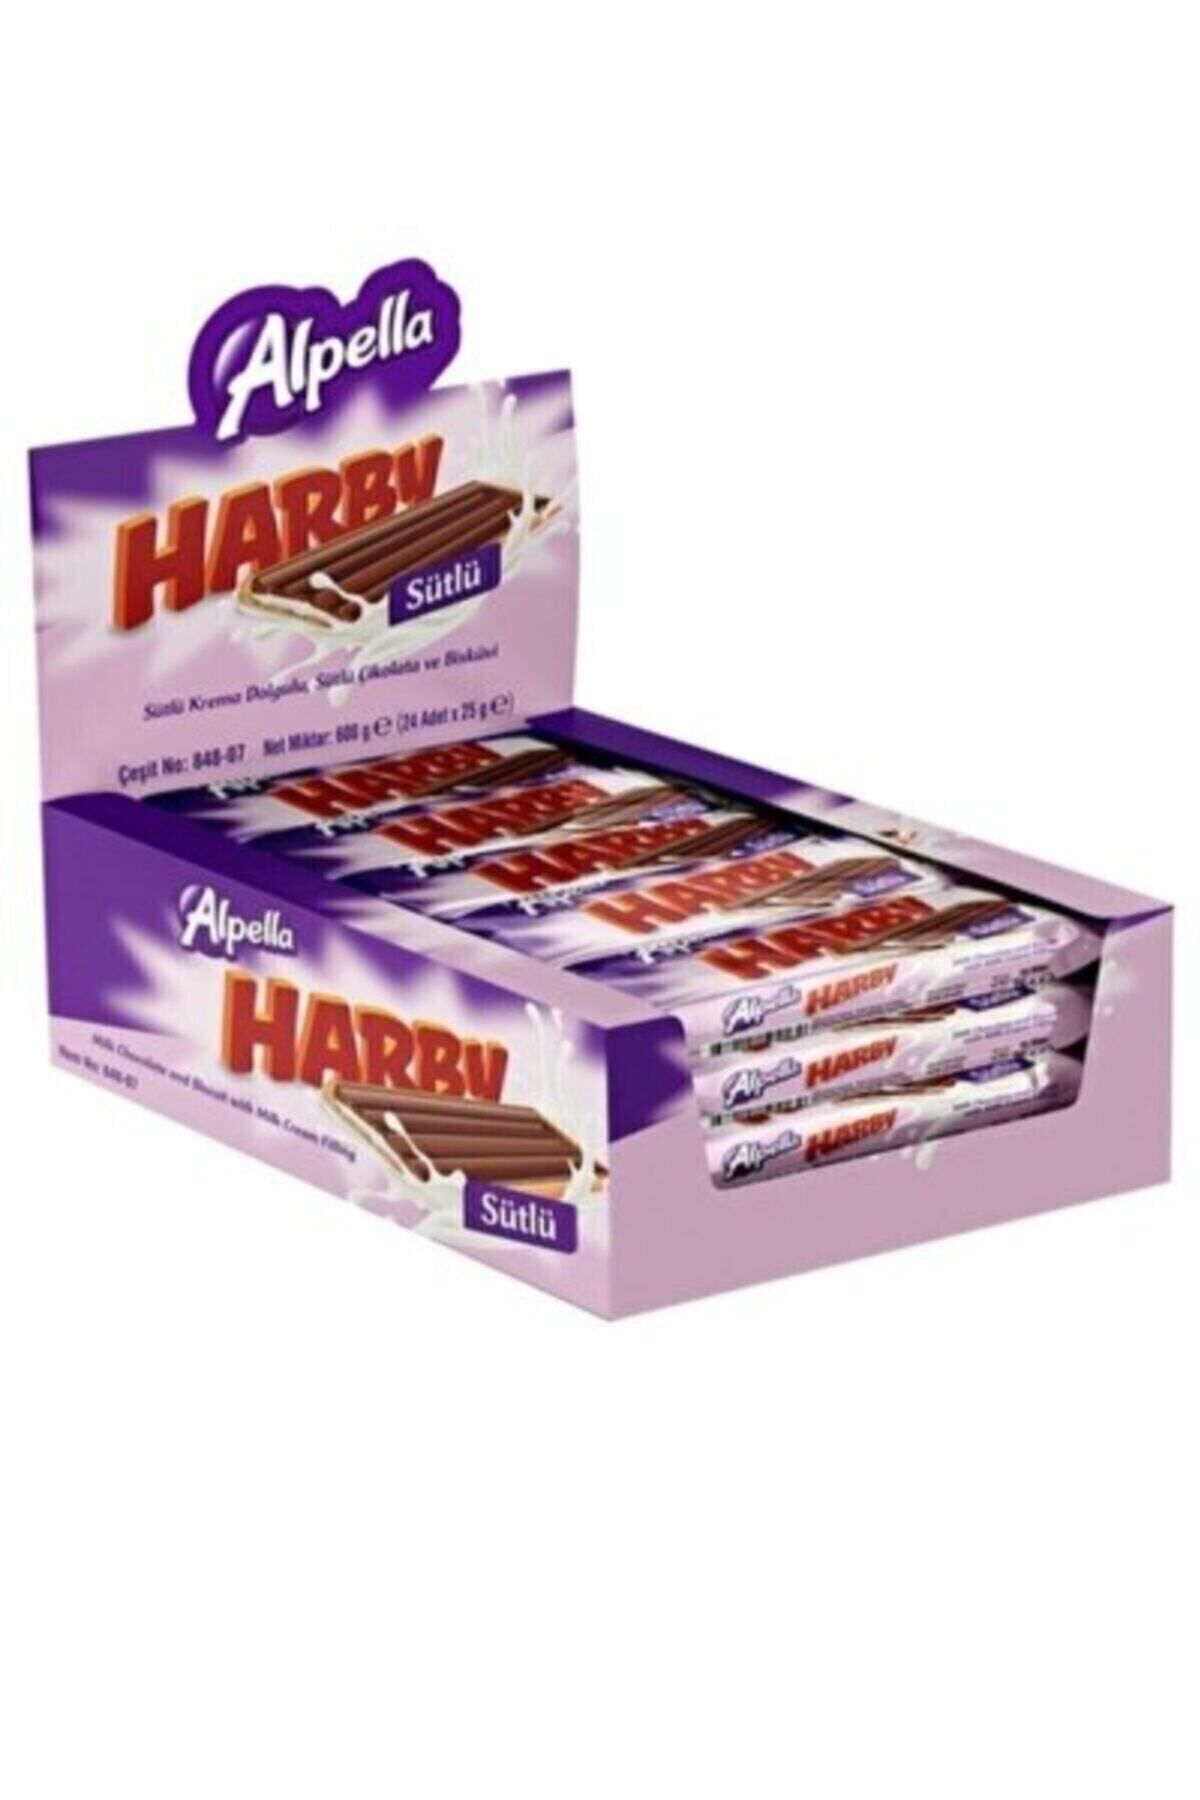 ORONTES MARKET Sütlü Alpella Harby Çikolata 25gr*24adt